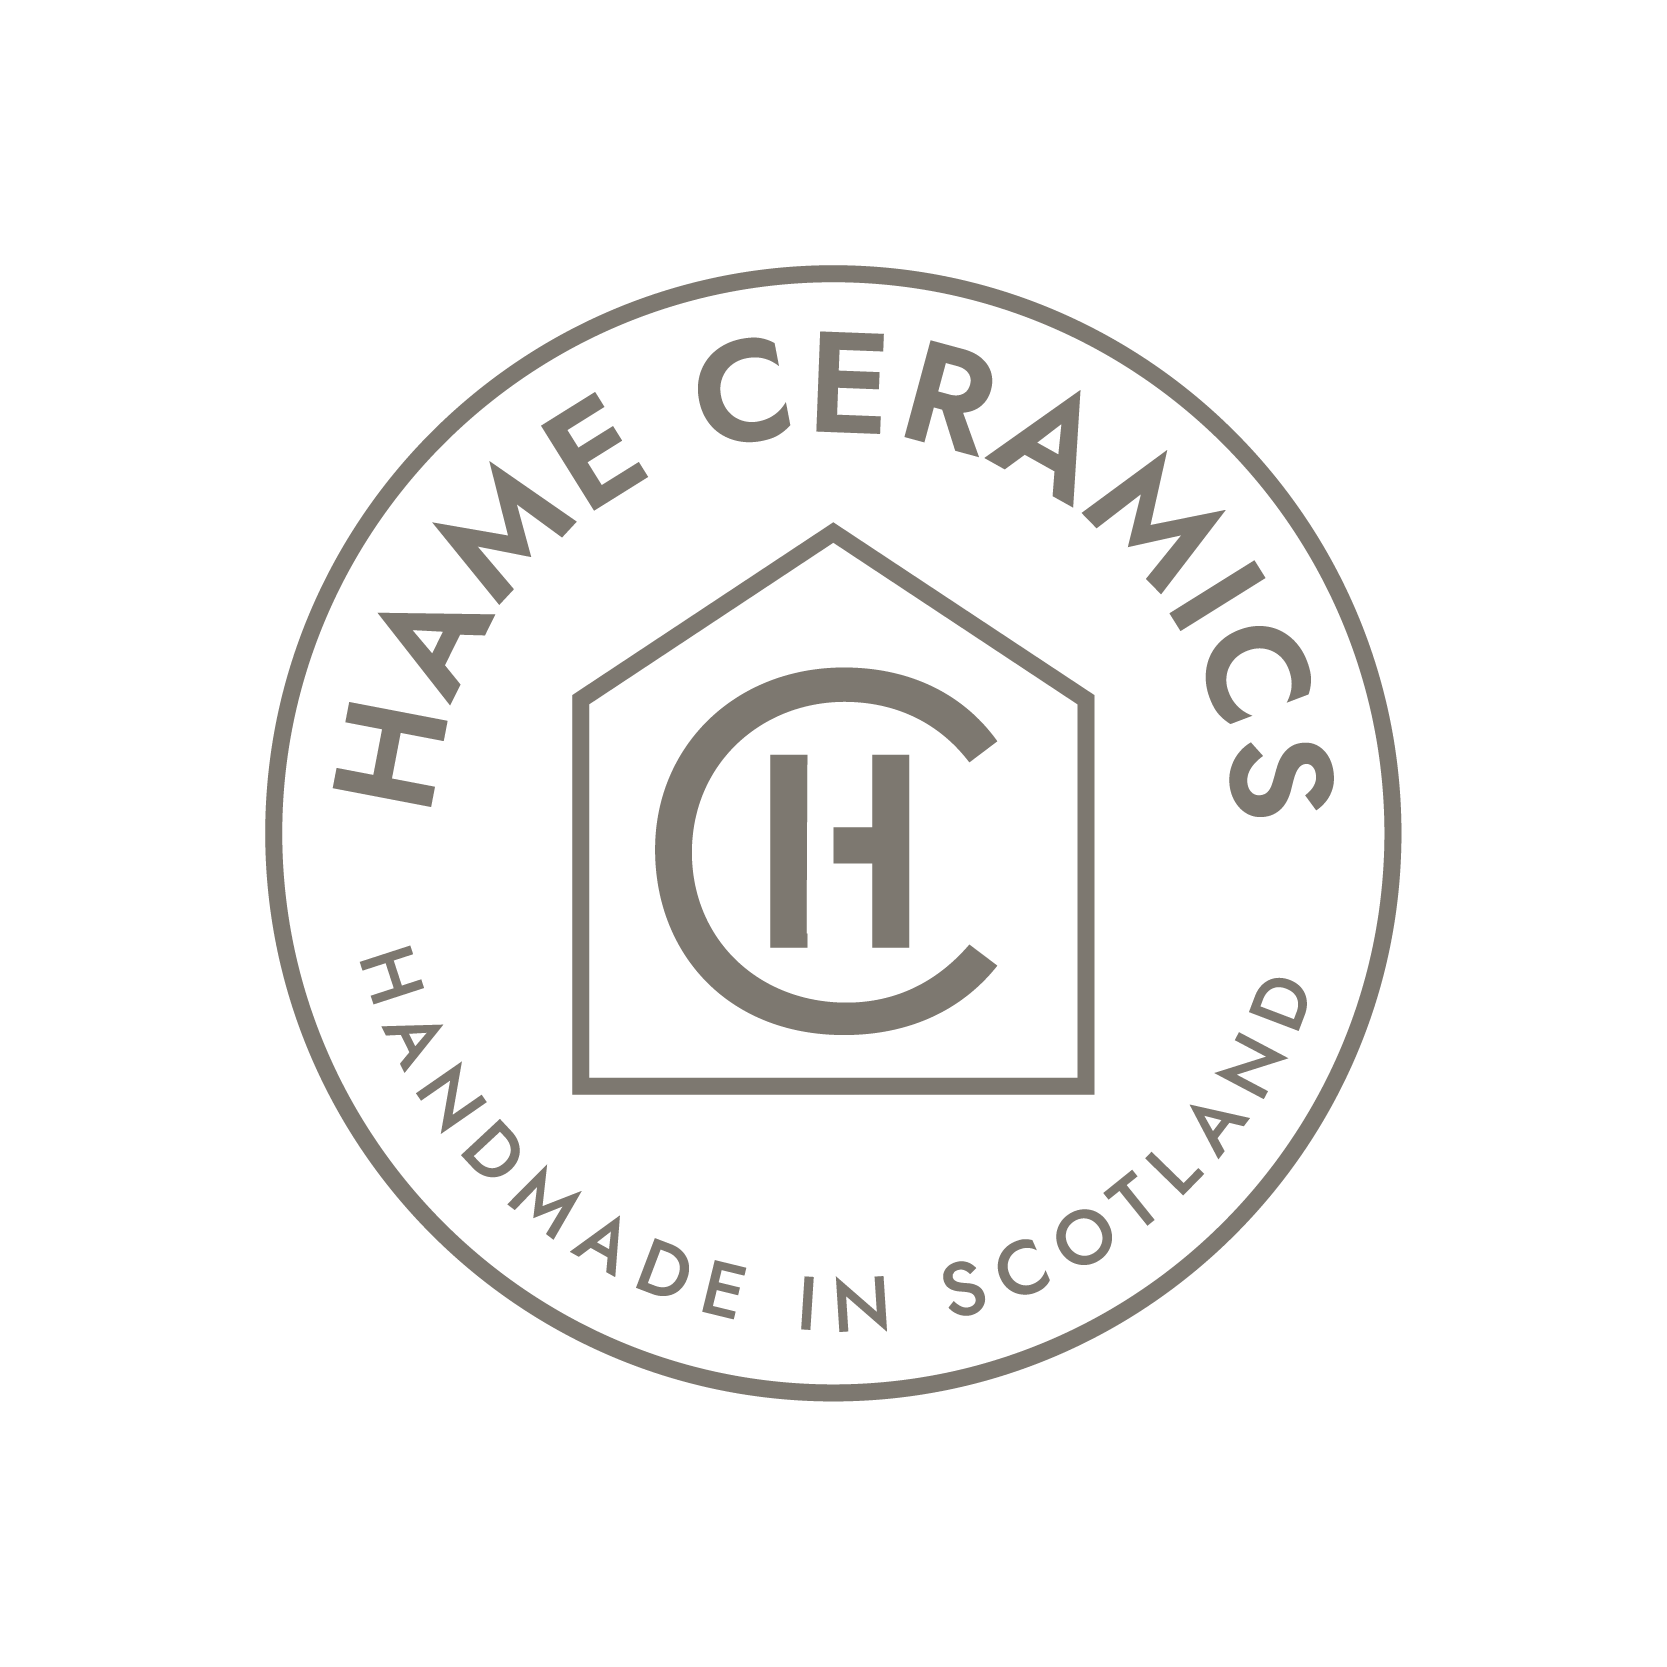 Logo Design for Ceramic Business